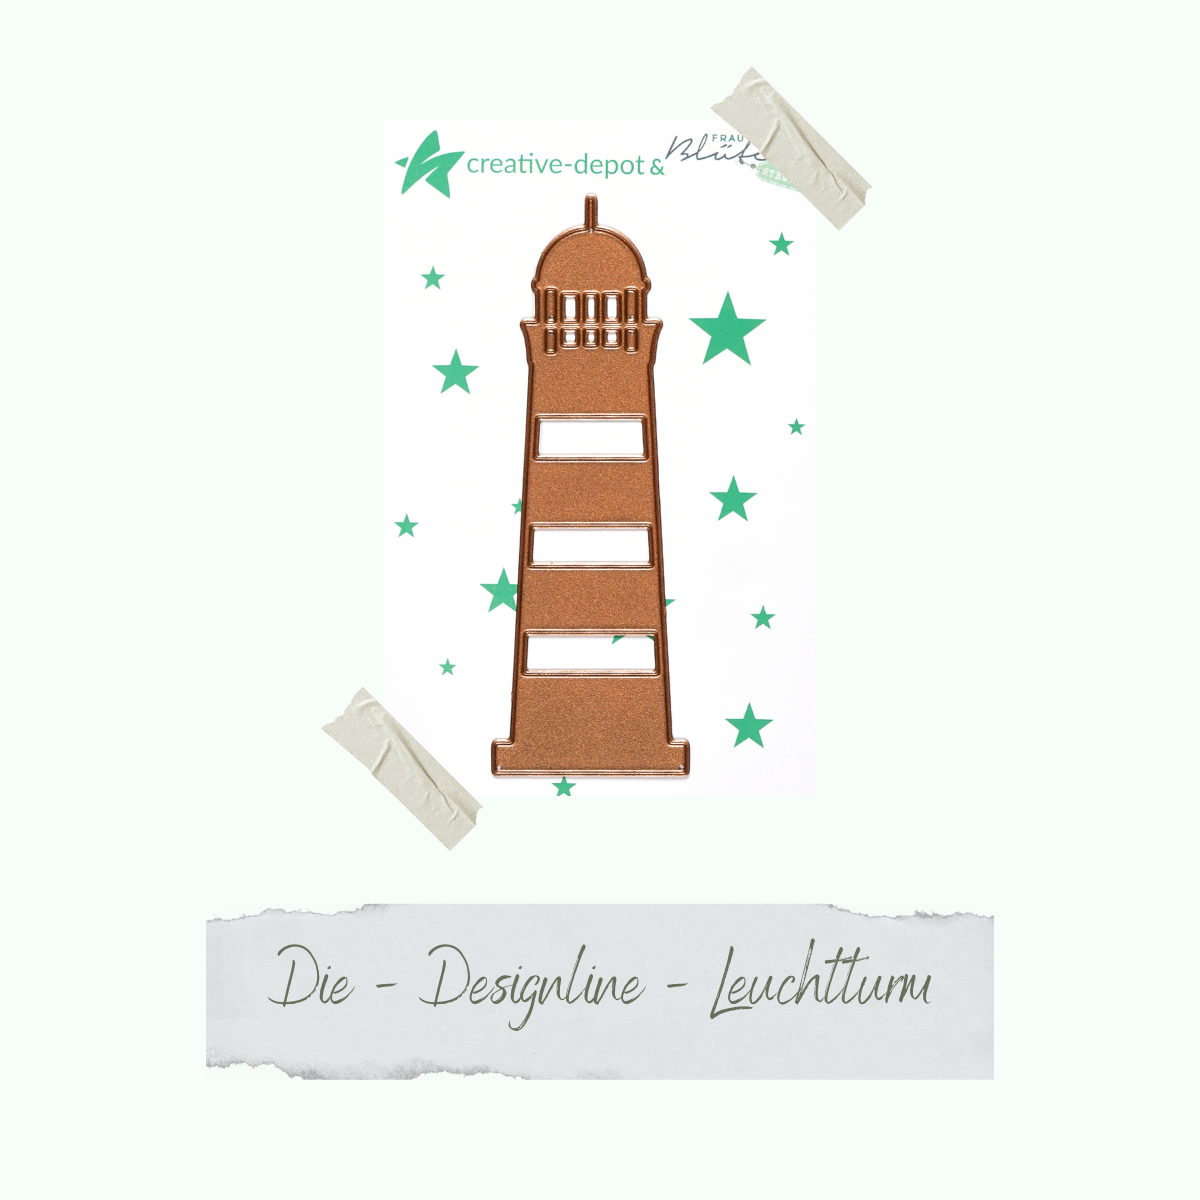 Die - Designline - Leuchtturm